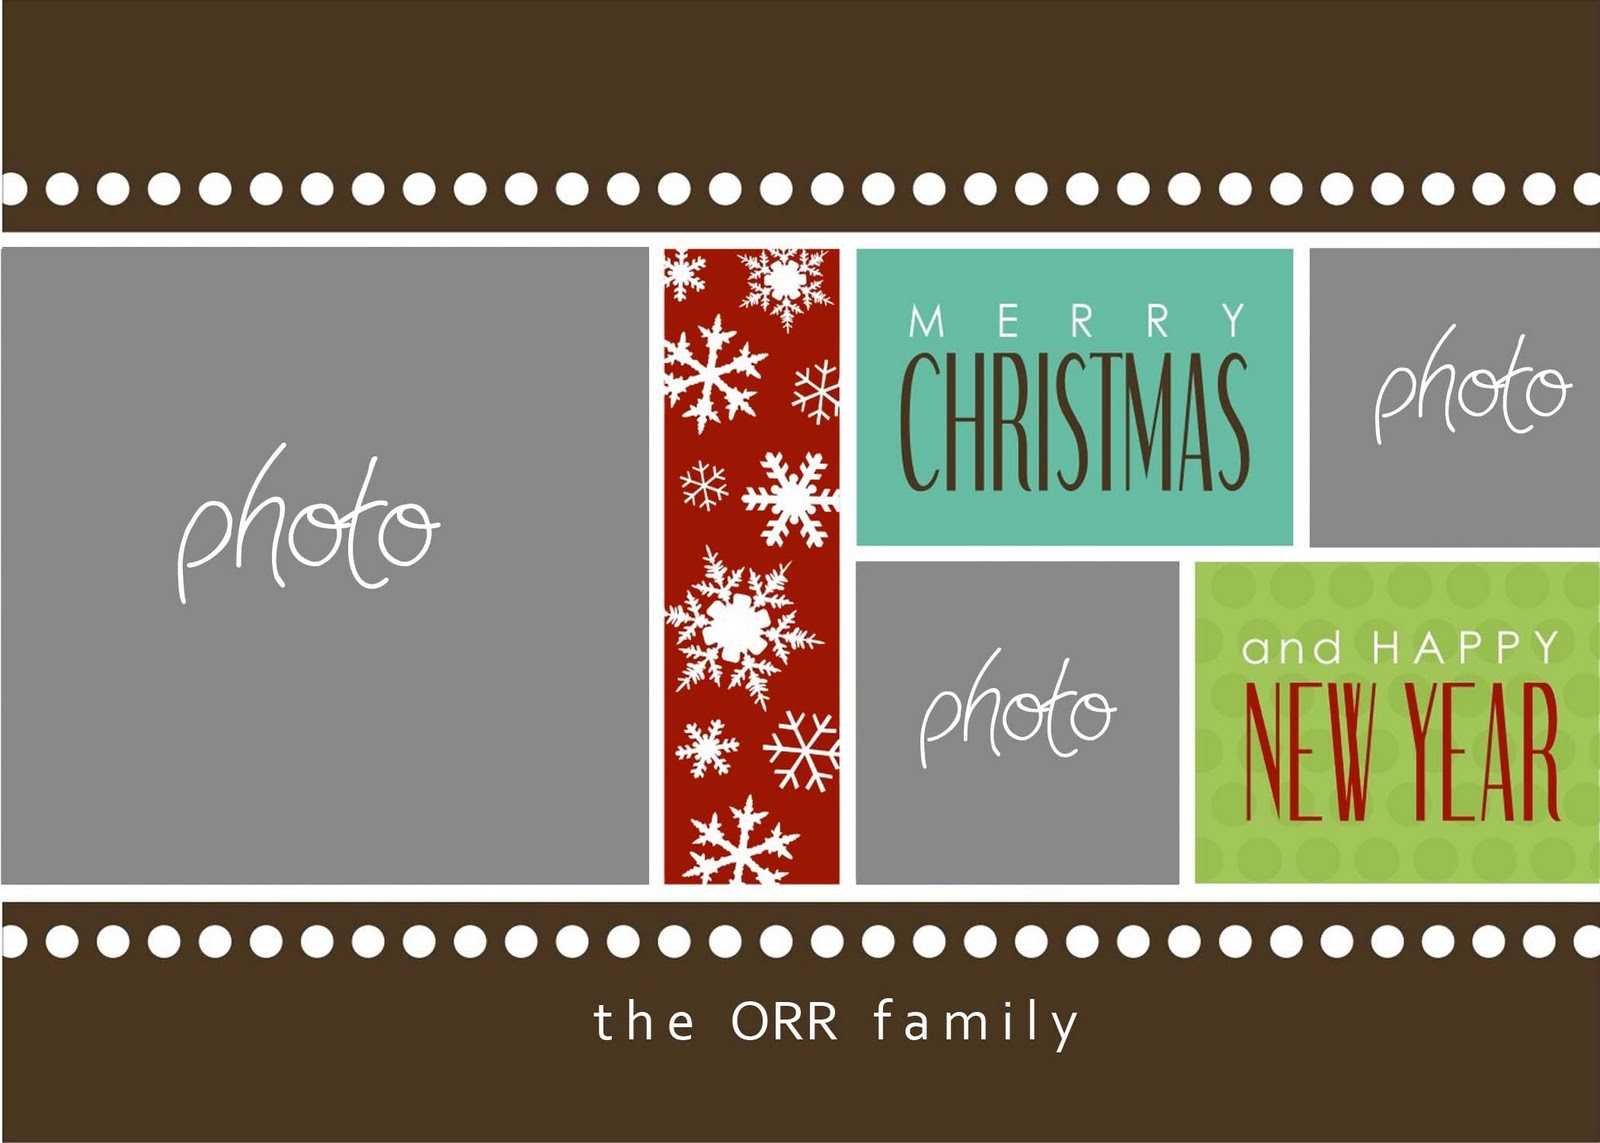 Christmas Cards Templates Photoshop ] – Christmas Card Inside Free Christmas Card Templates For Photoshop